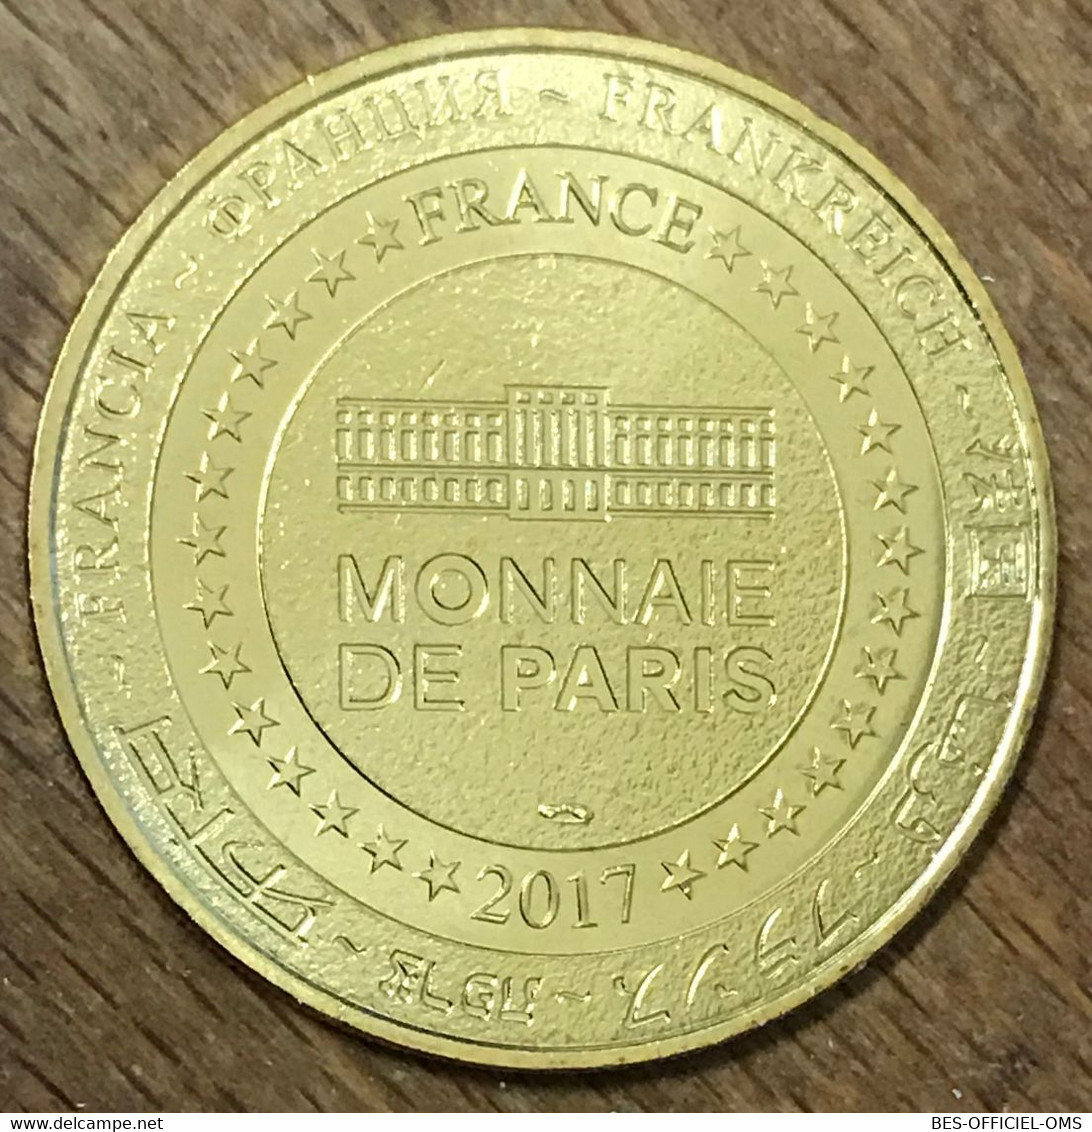 77 DISNEYLAND MINNIE LE CAROUSEL DISNEY MDP 2017 MÉDAILLE SOUVENIR MONNAIE DE PARIS JETON TOURISTIQUE MEDALS COIN TOKENS - 2017